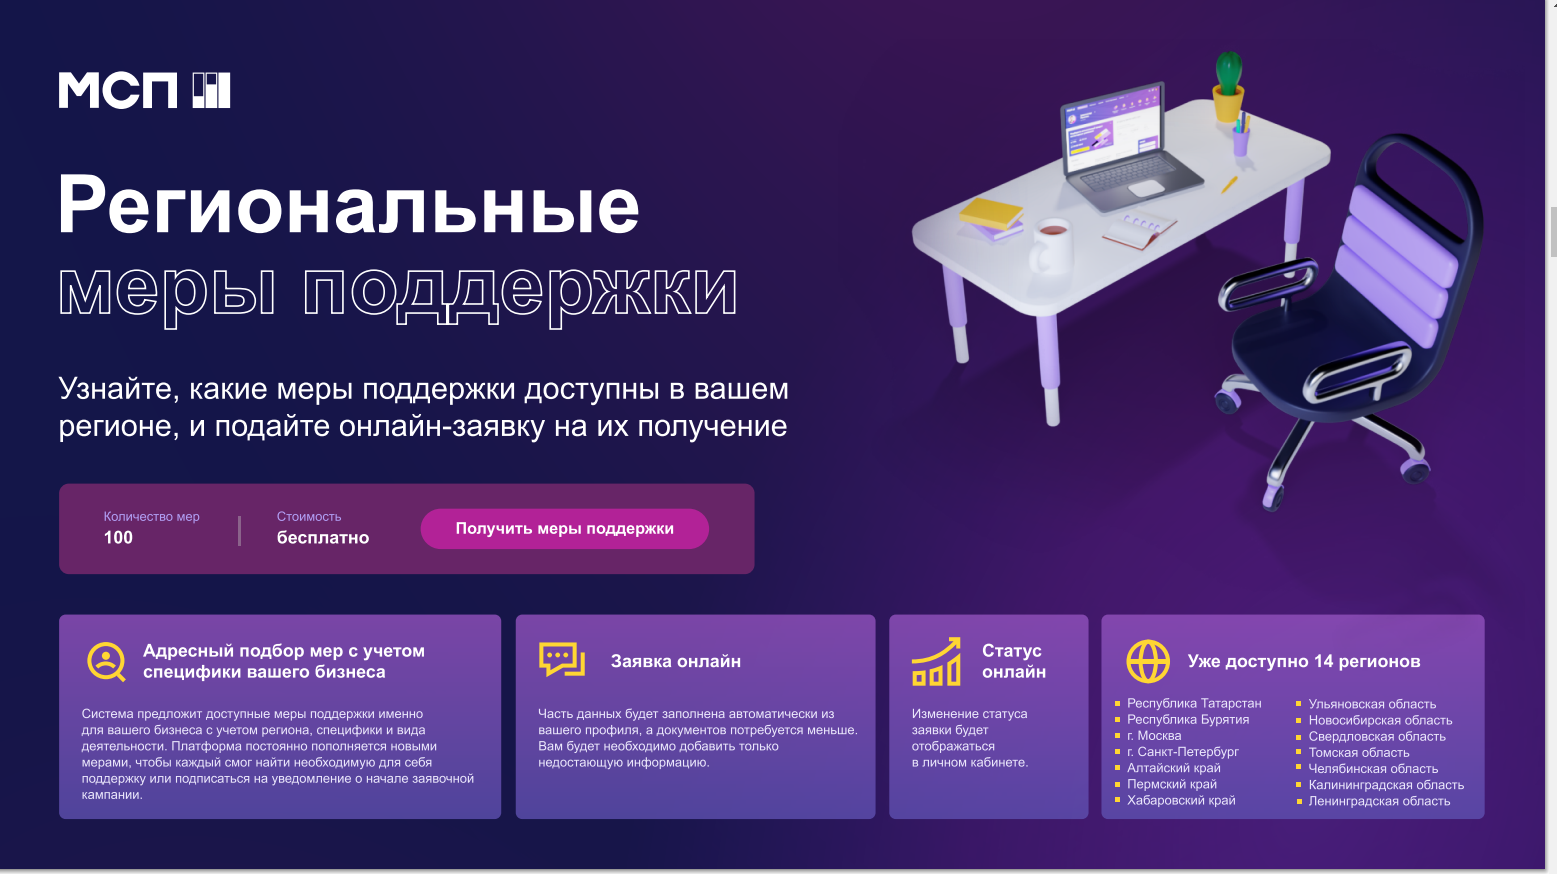 Цифровая платформа МСП РФ